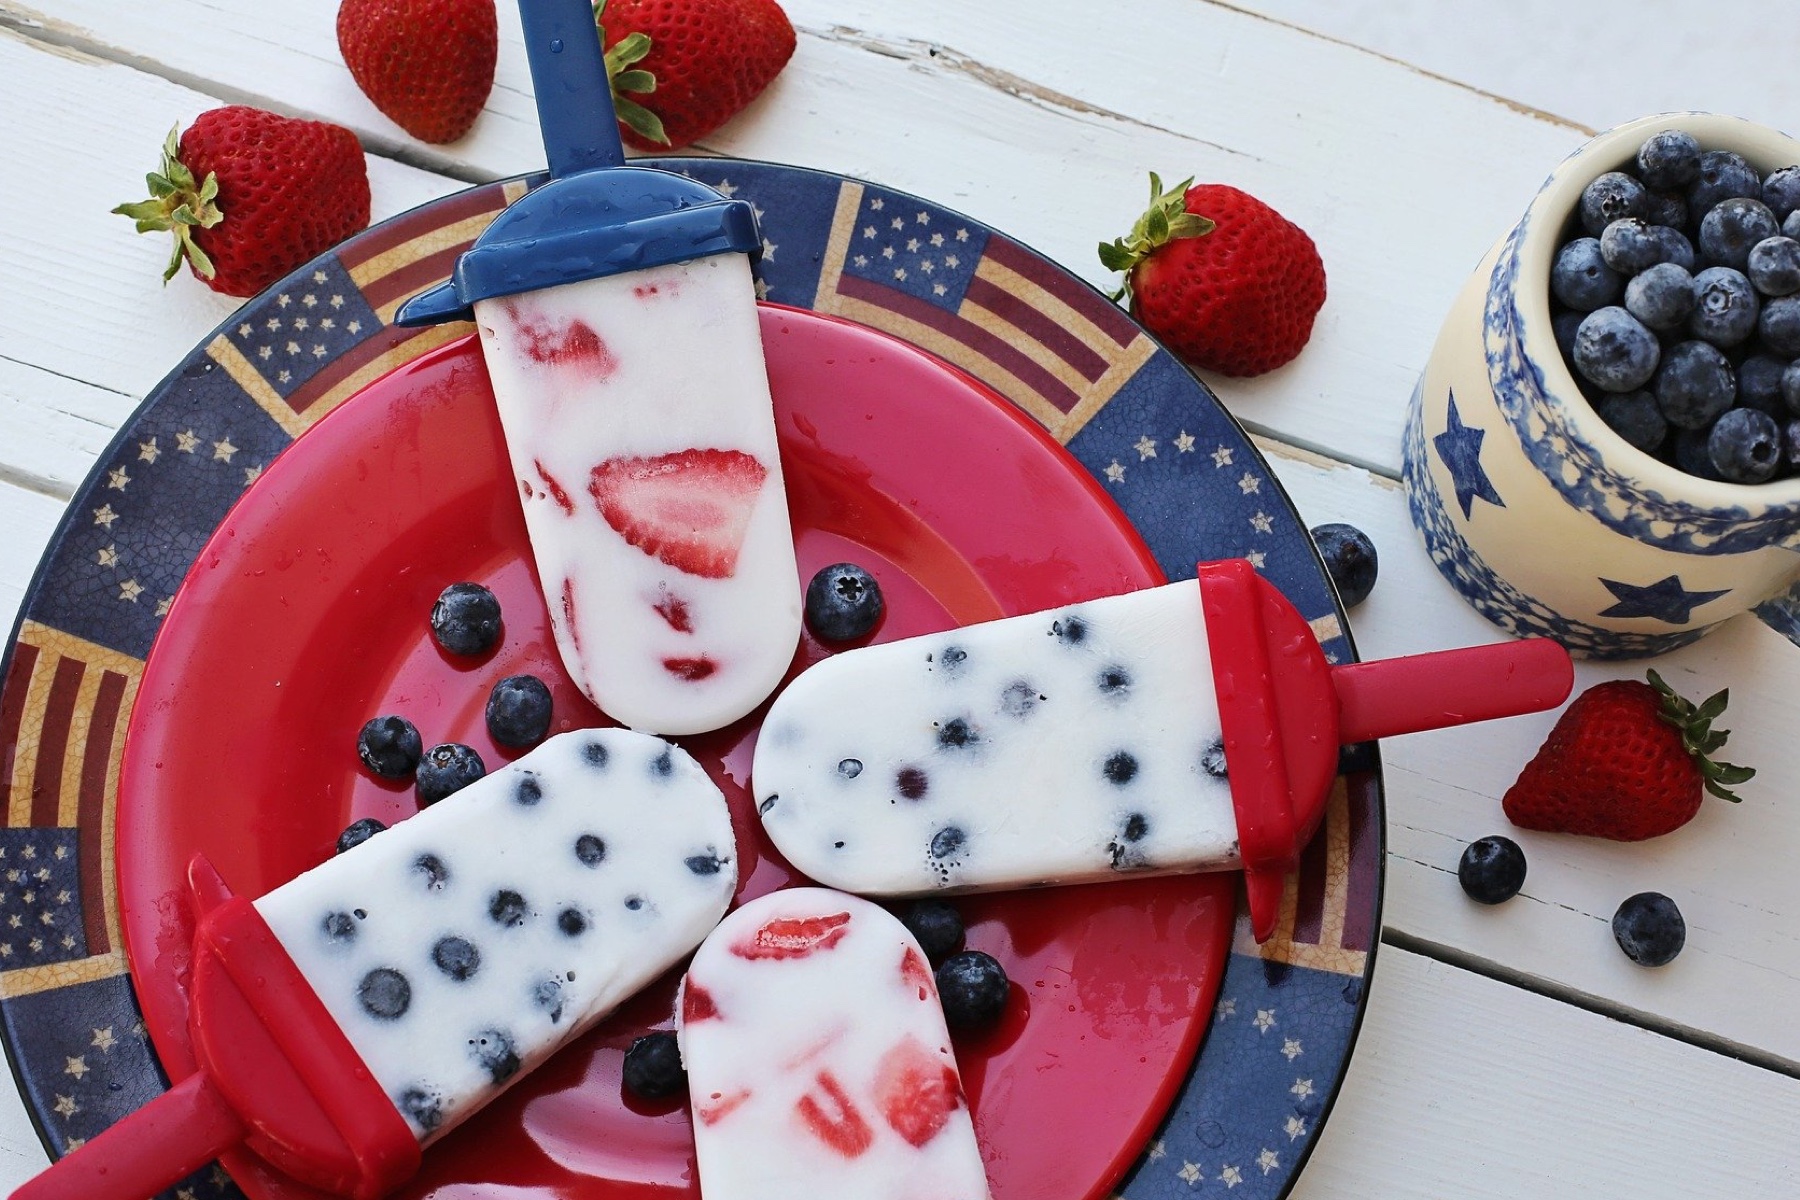 Frozen yogurt popcicles with berries